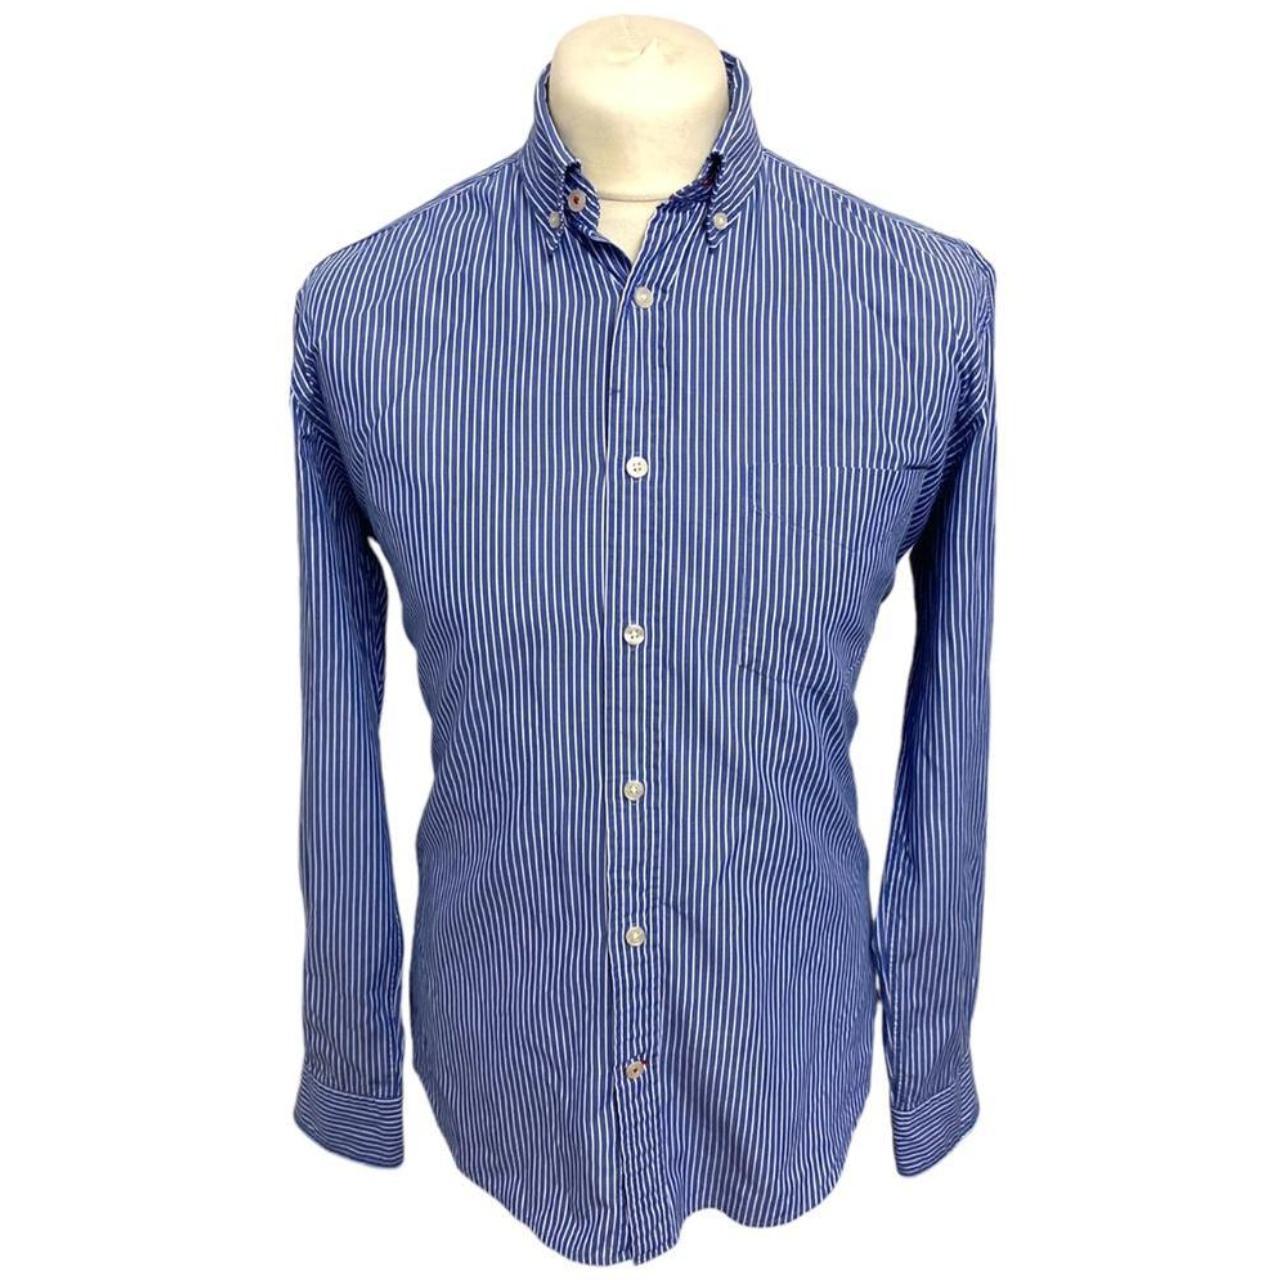 T.M. LEWIN Medium Blue Striped Long Sleeved Shirt... - Depop